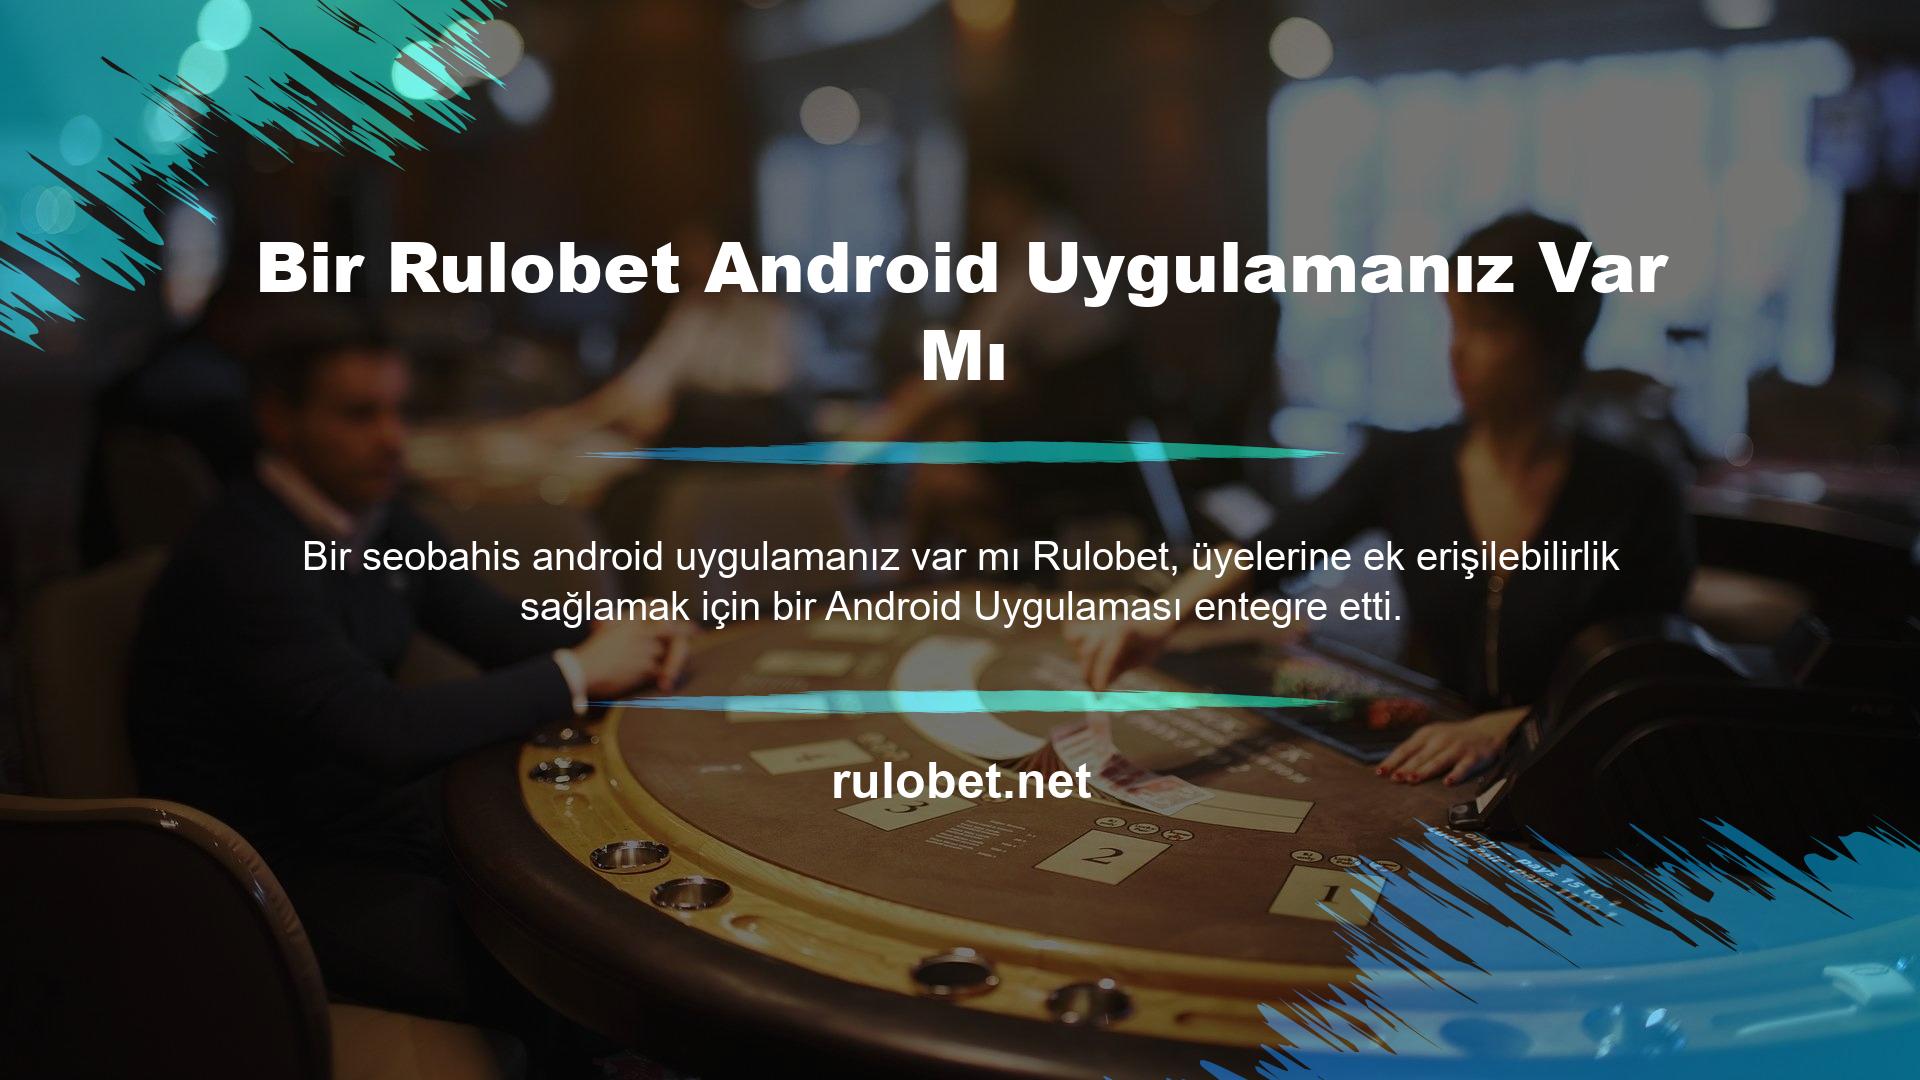 Bir Rulobet Android Uygulamanız Var Mı